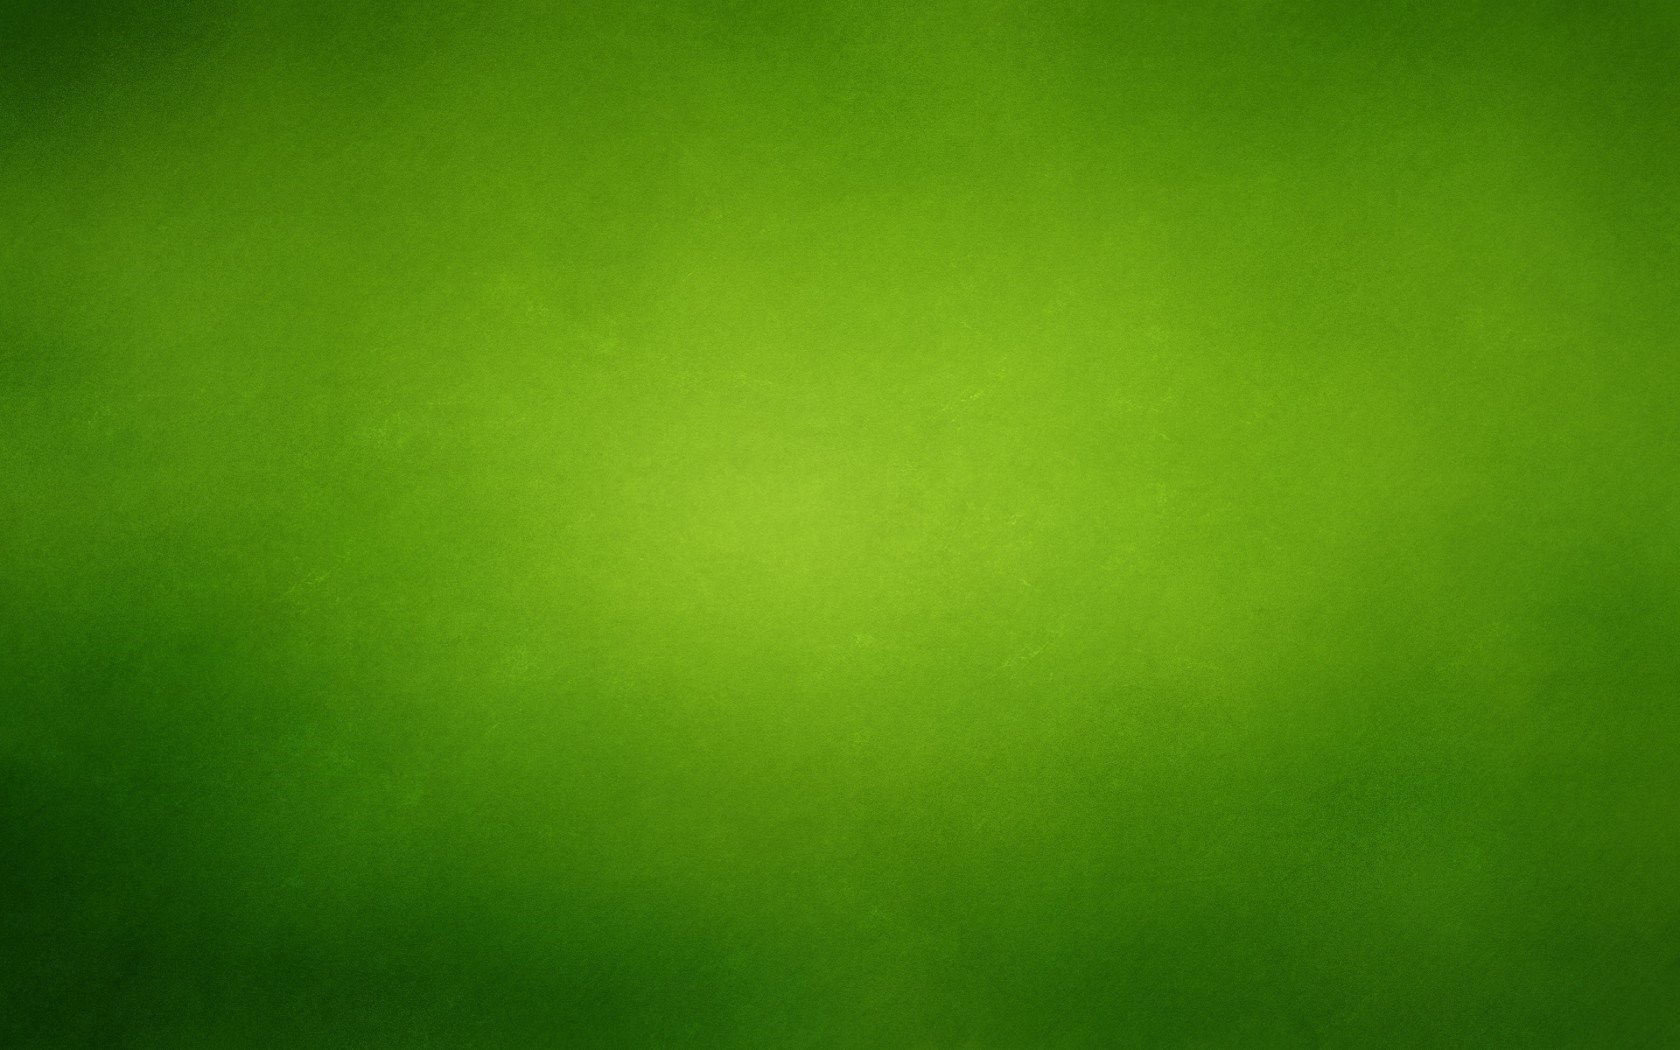 Hình nền xanh lá cây với họa tiết giấy và vết xước trên bề mặt mang lại cho bạn một cảm giác đầy màu sắc và hoạt động. Với sự phối hợp tinh tế của những họa tiết và vết xước, hình nền này sẽ làm một điểm nhấn đặc biệt cho màn hình máy tính của bạn.